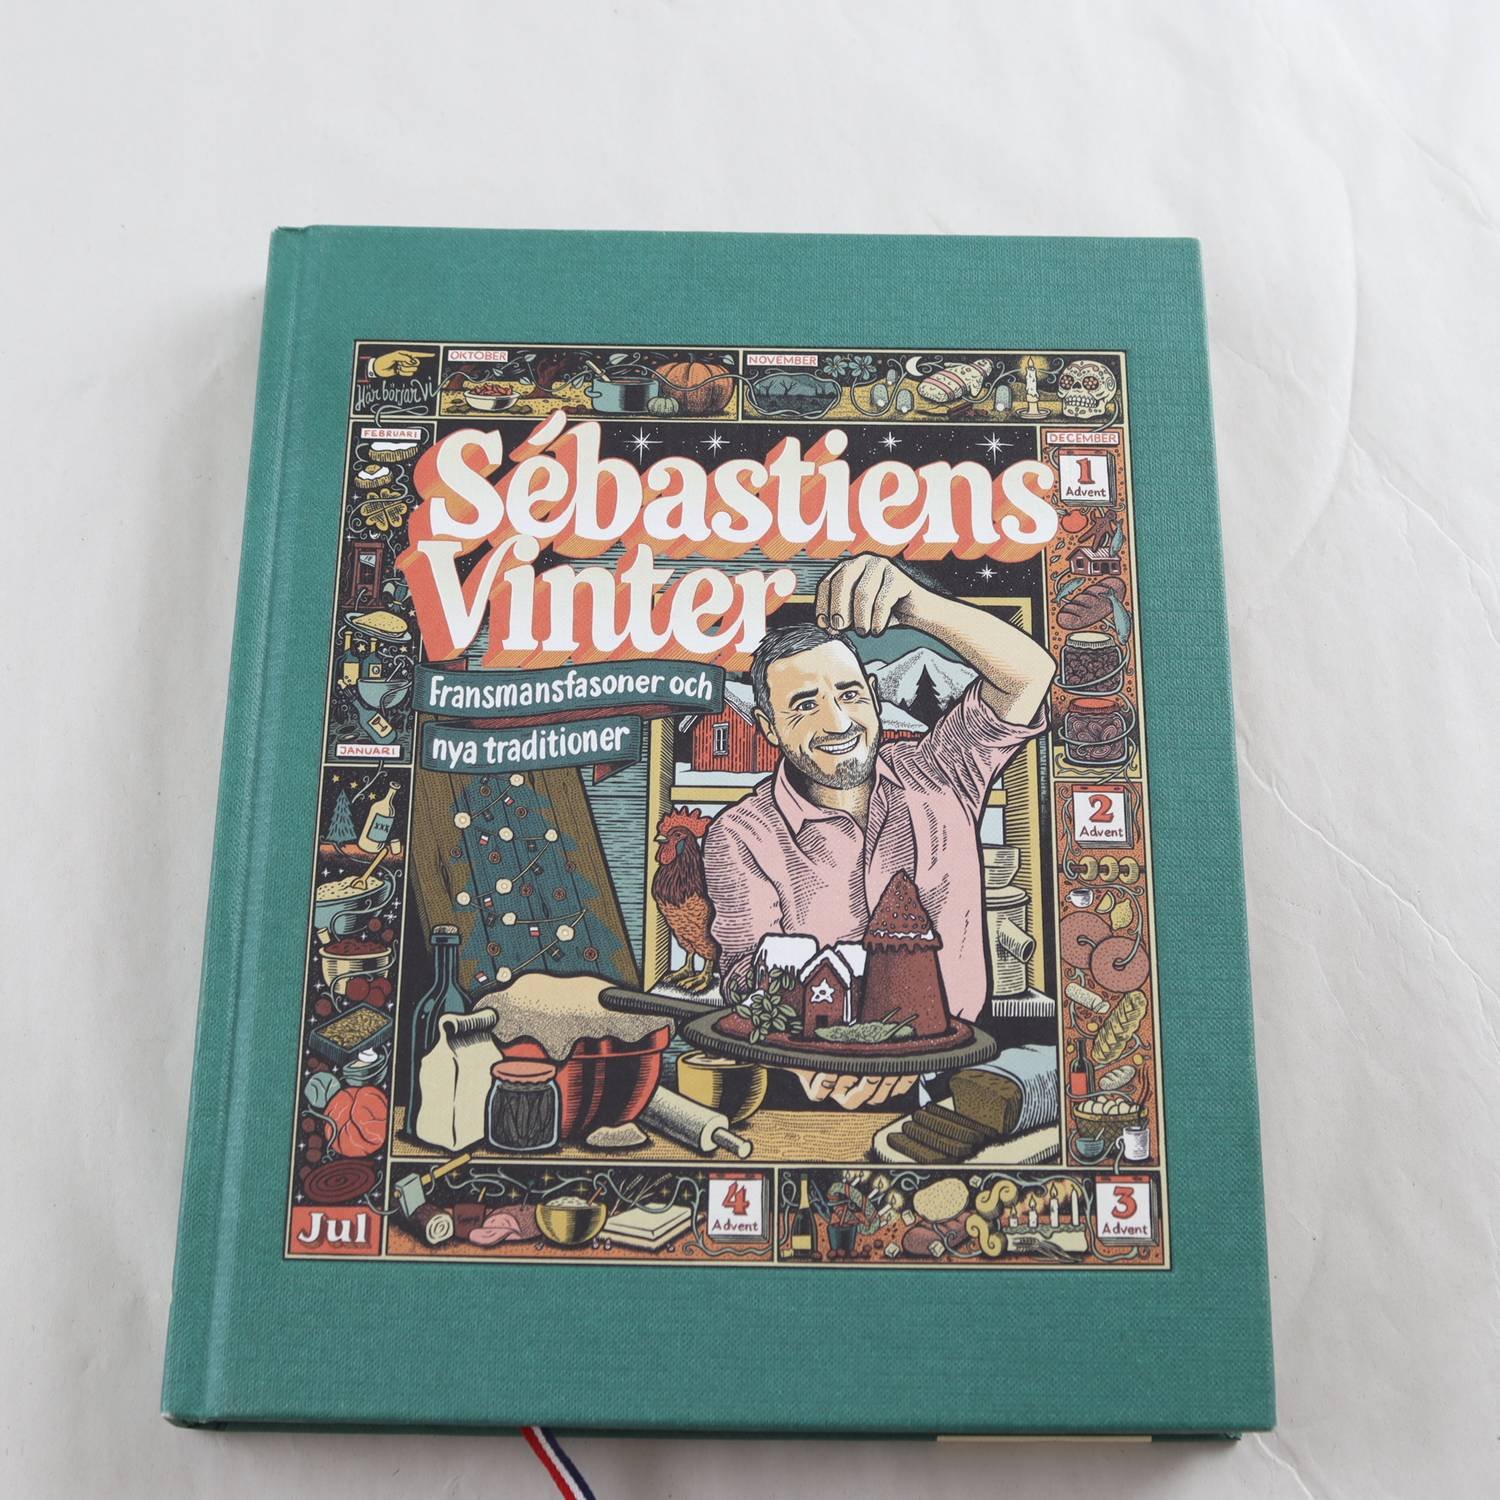 Sébastiens Vinter, Fransmansfasoner och nya traditioner